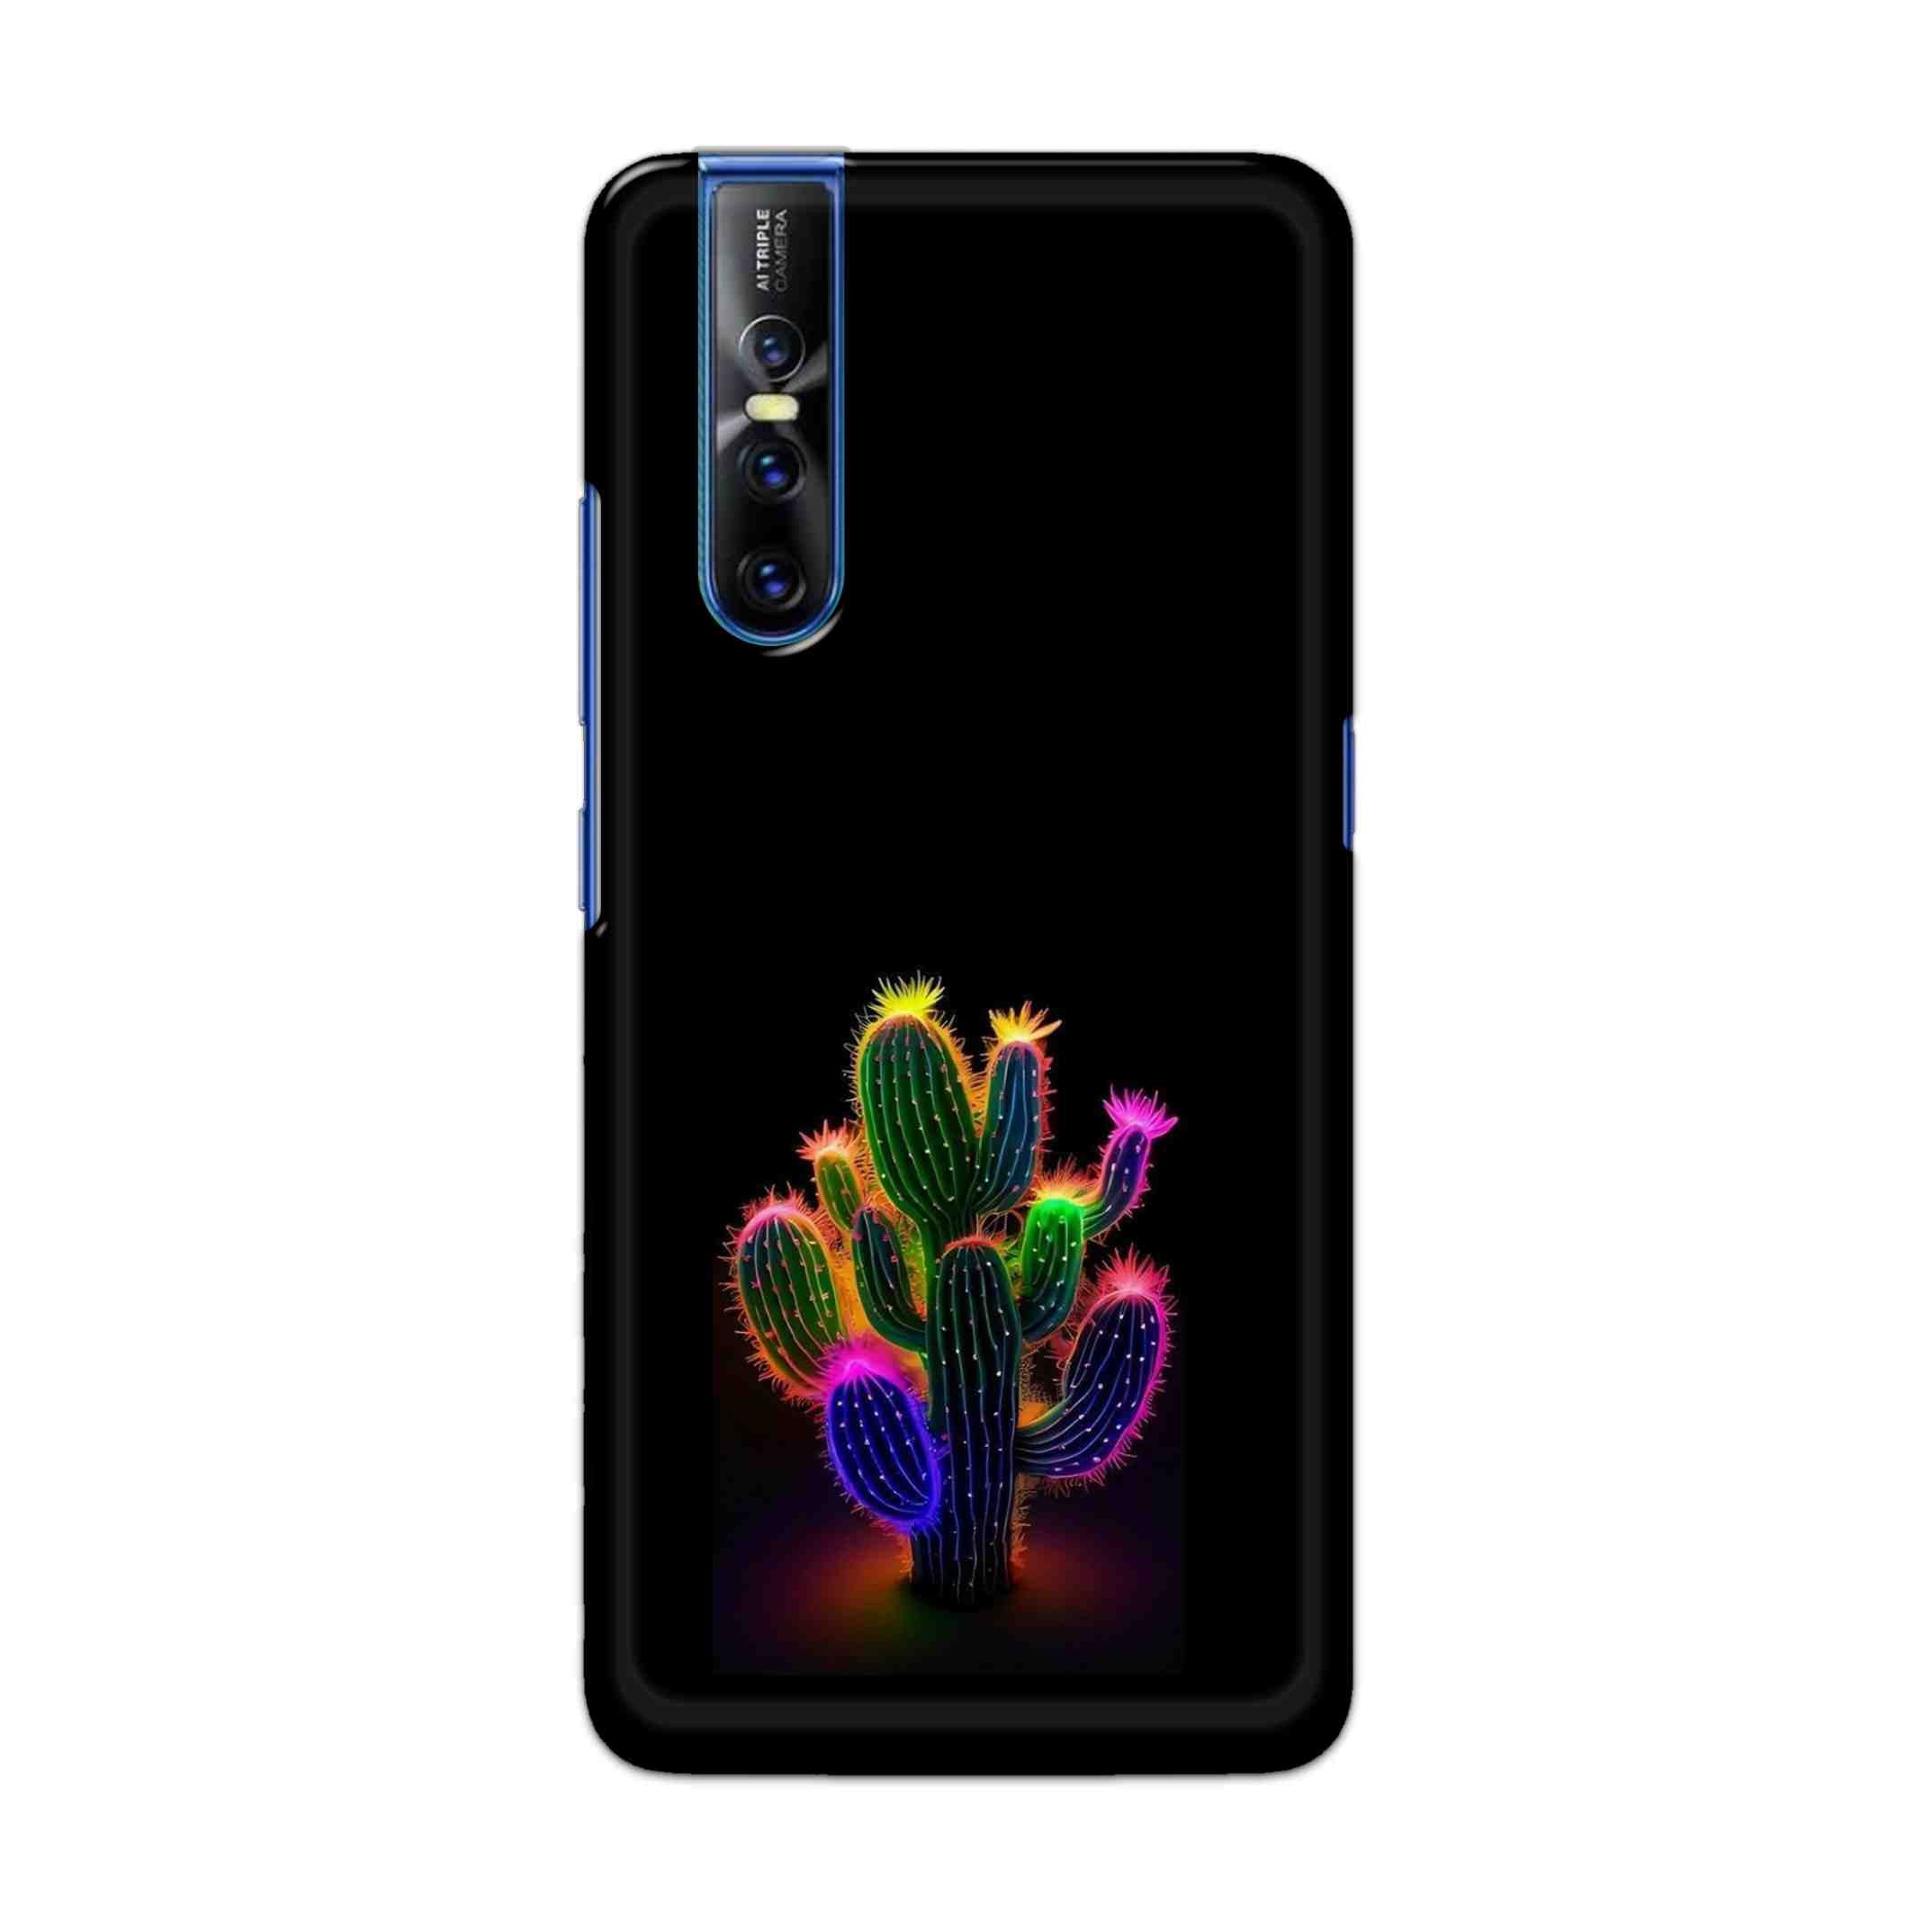 Buy Neon Flower Hard Back Mobile Phone Case Cover For Vivo V15 Pro Online